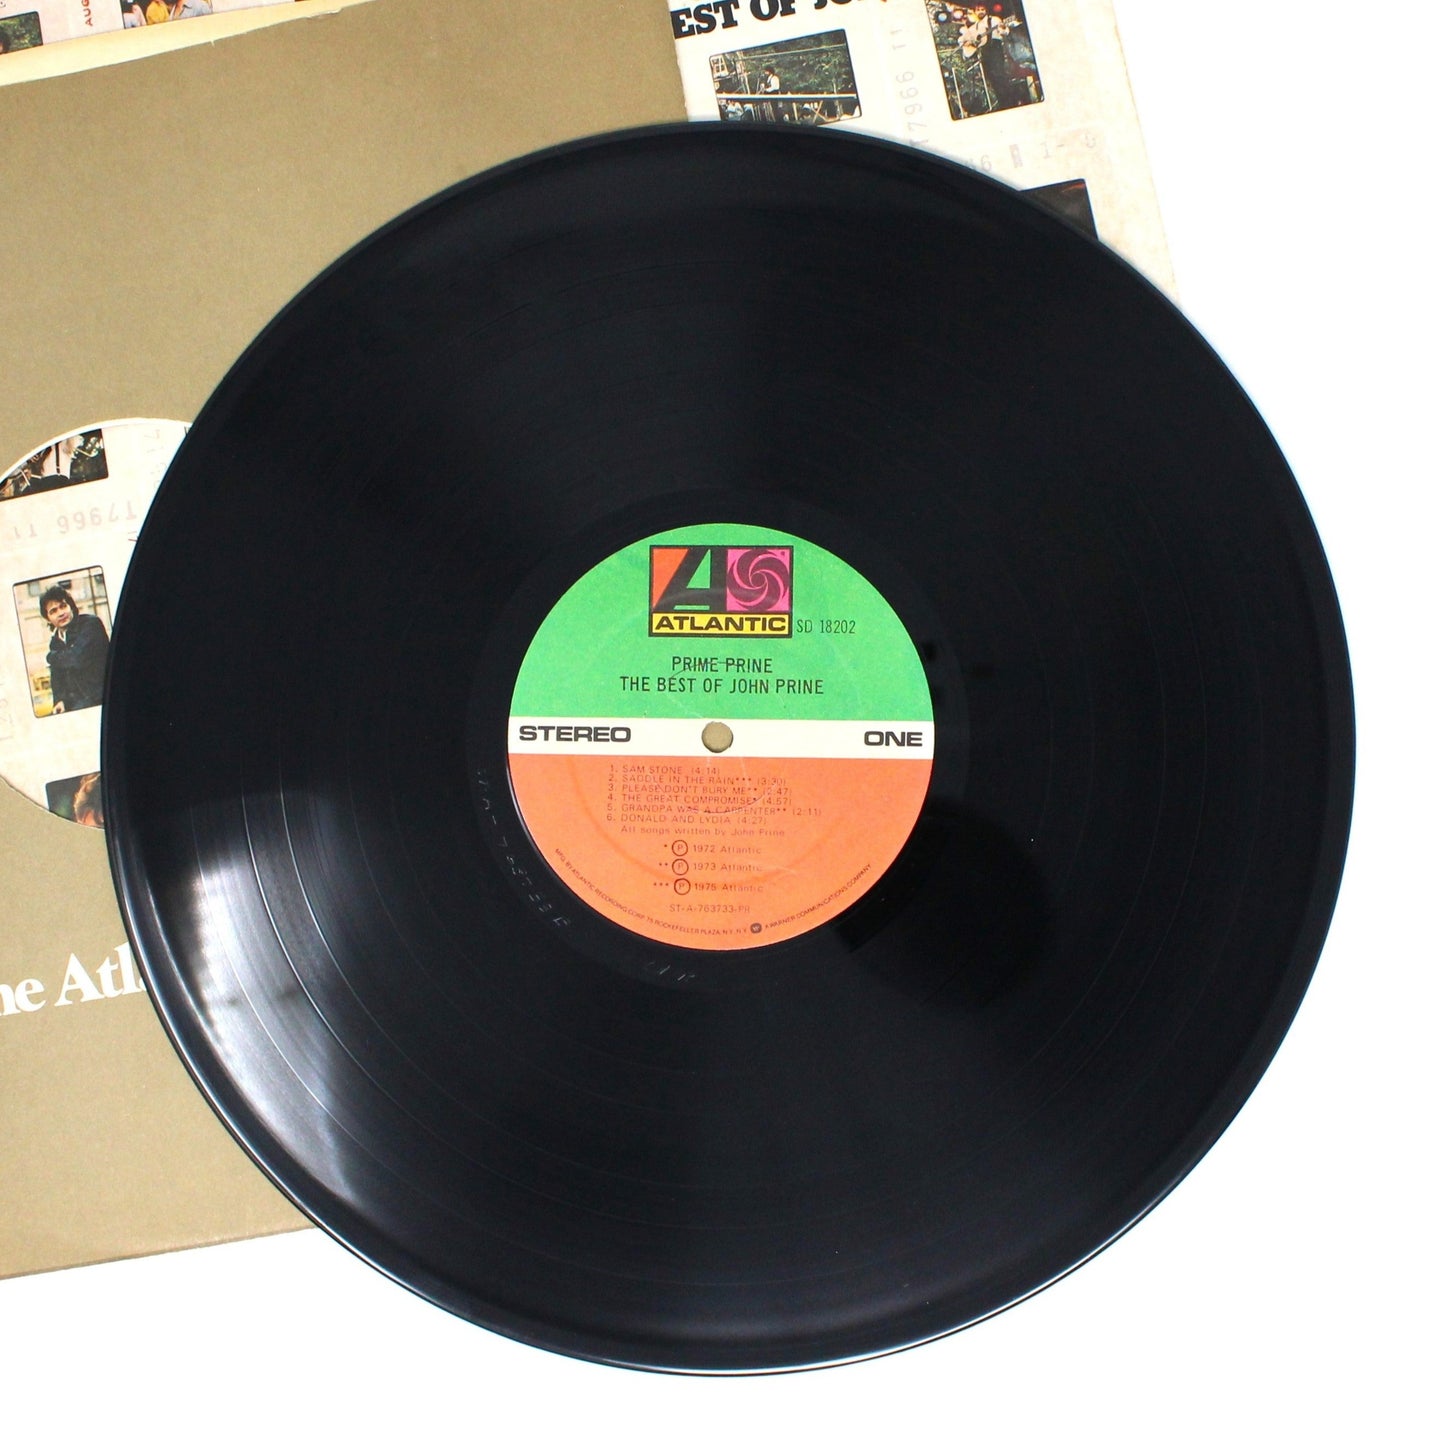 Record Album, John Prine, Prime Prine The Best of John Prine, Original 1976, Atlantic Records, Vintage VG